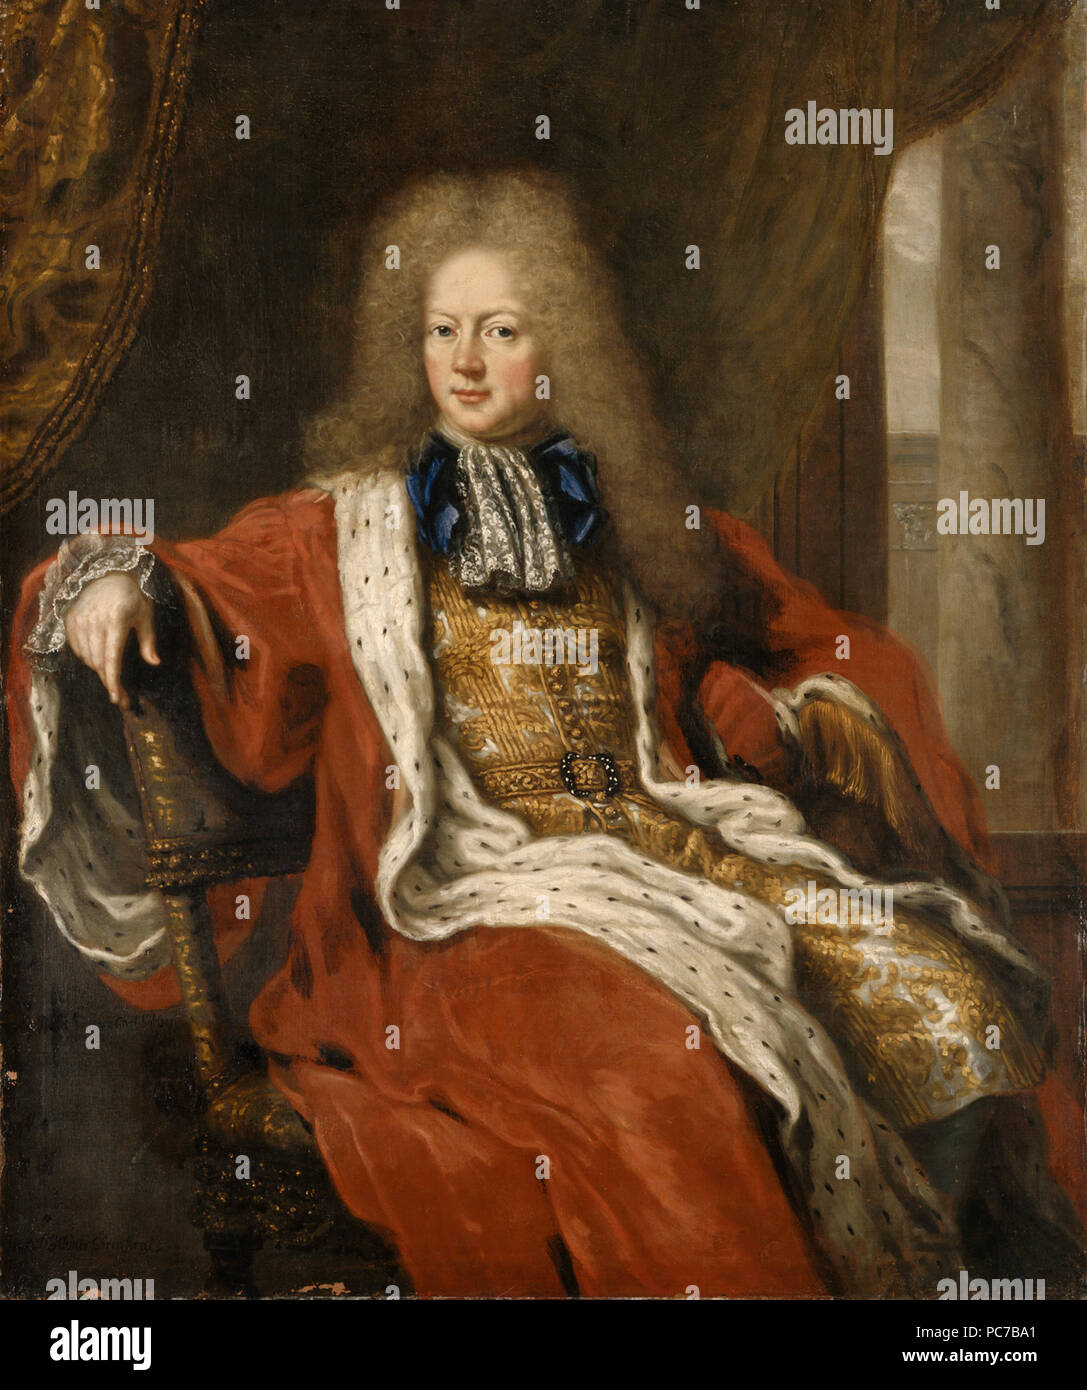 17 Carl Gyllenstierna af Steninge, 1649-1723 (David Klöcker Ehrenstrahl) - Nationalmuseum - 15348 Stock Photo